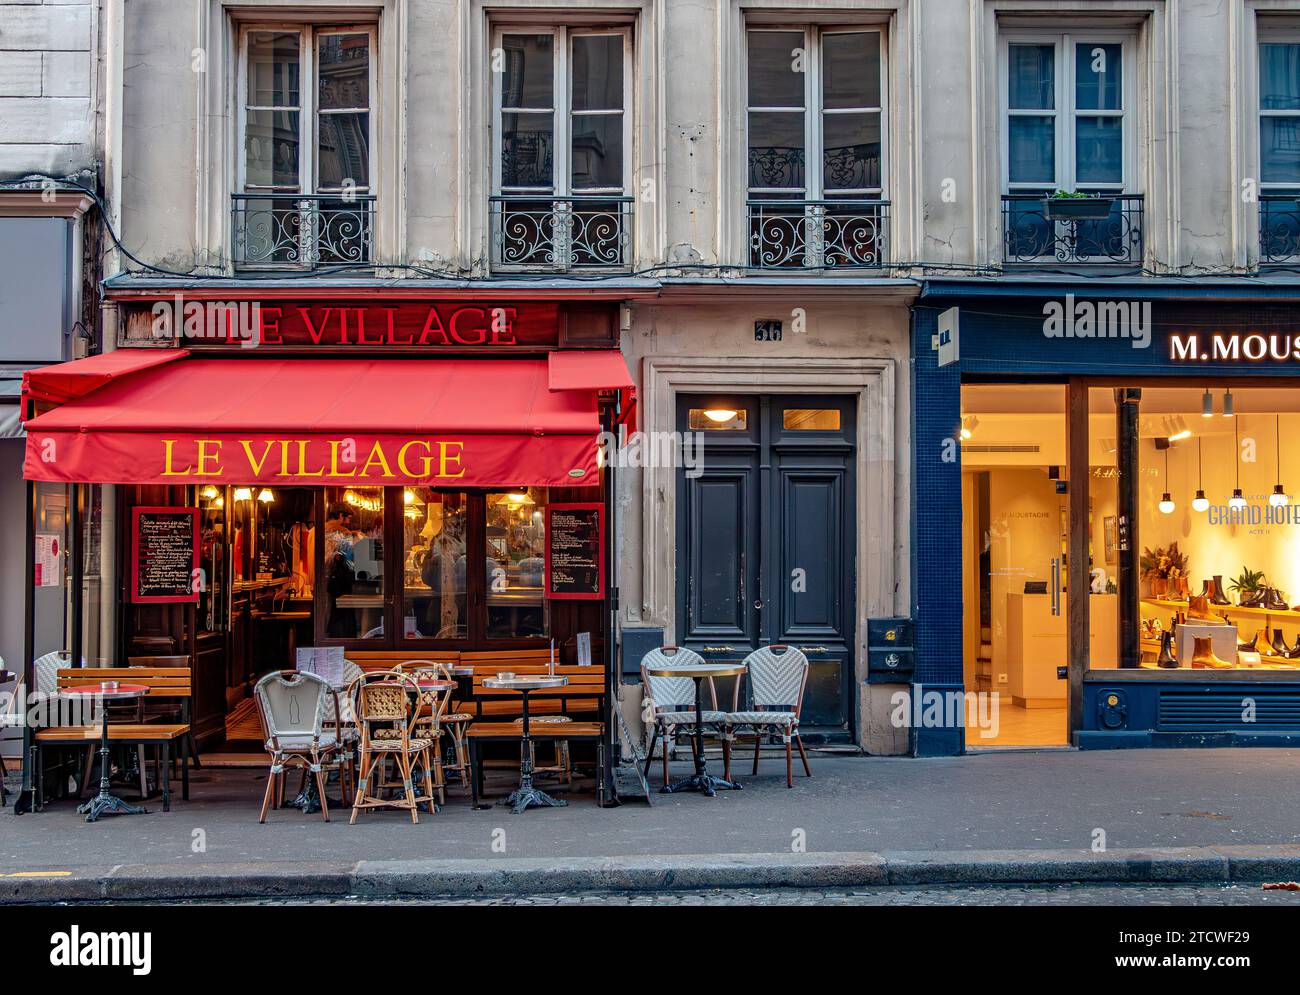 Tables et chaises devant le Village, un petit restaurant, un café rue des Abbesses, Montmartre dans le 18e arrondissement de Paris, France Banque D'Images